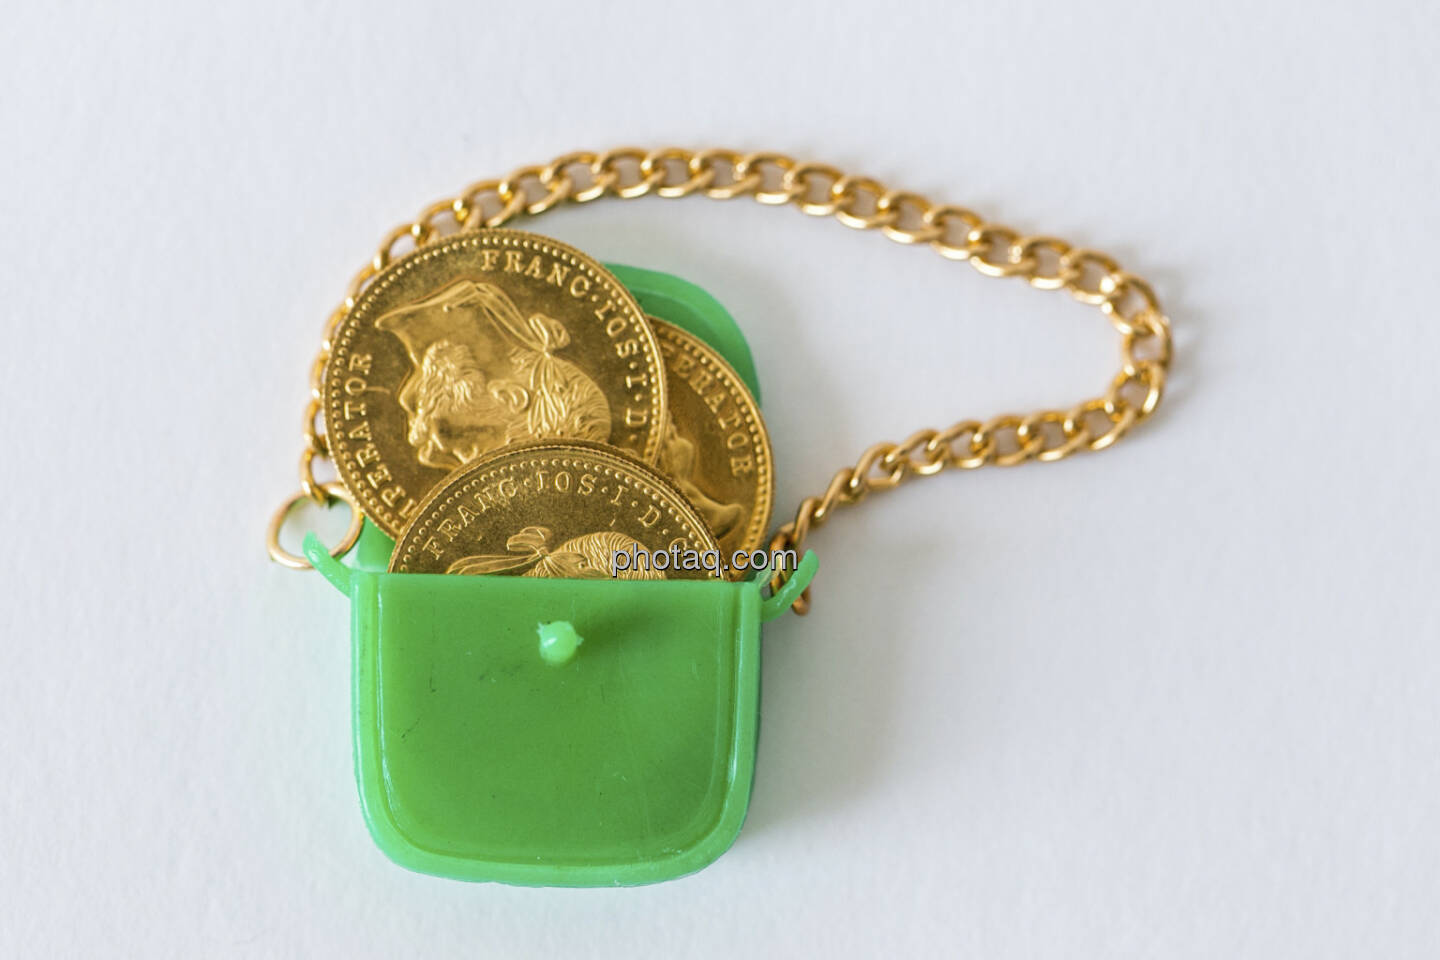 Die Taschen voll Gold, grüne Handtasche, Goldmünzen